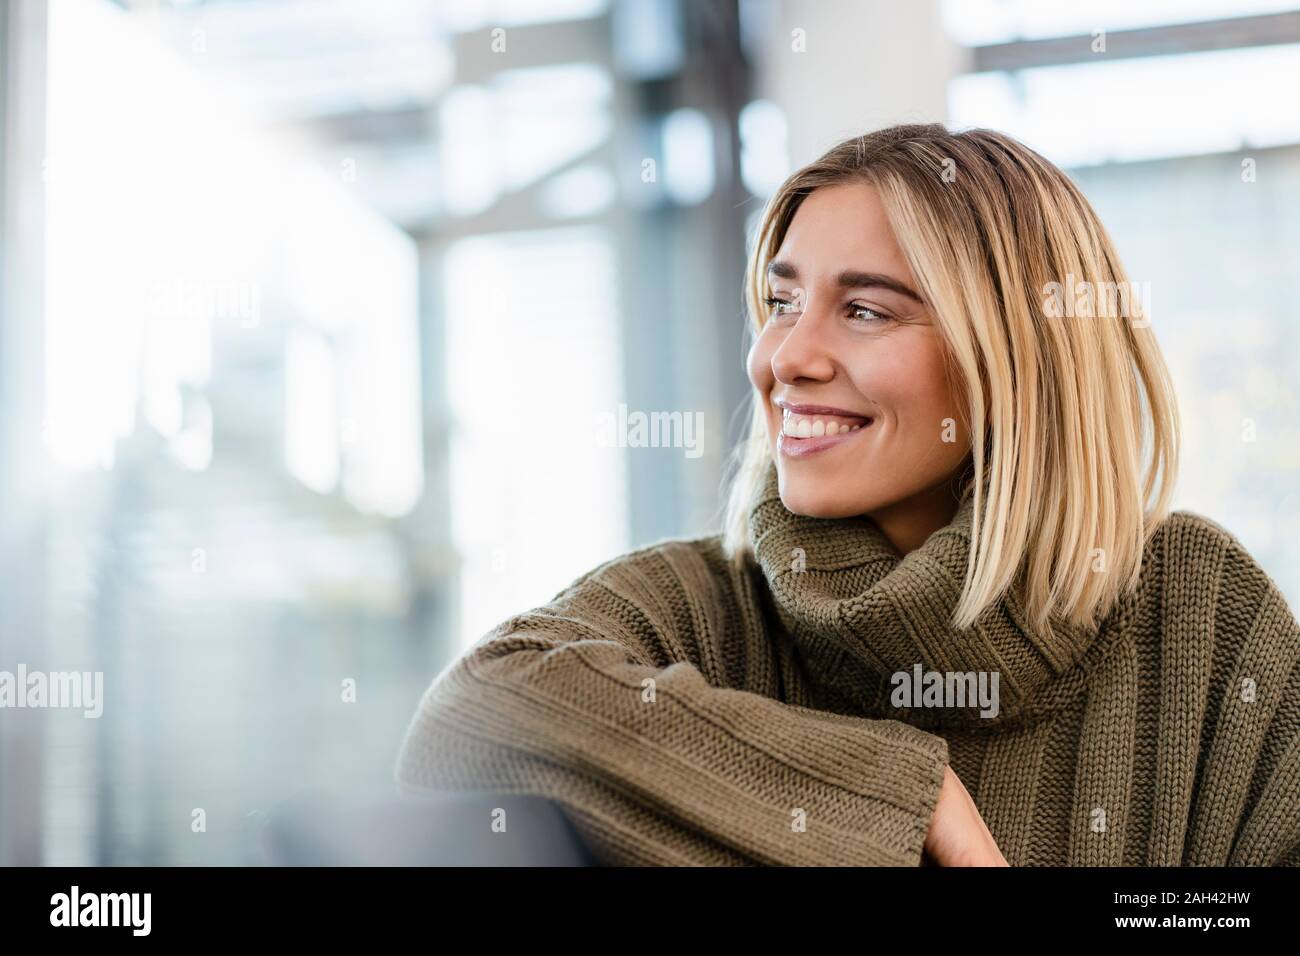 Sonriente joven mujer sentada en la sala de espera, mirando alrededor Foto de stock